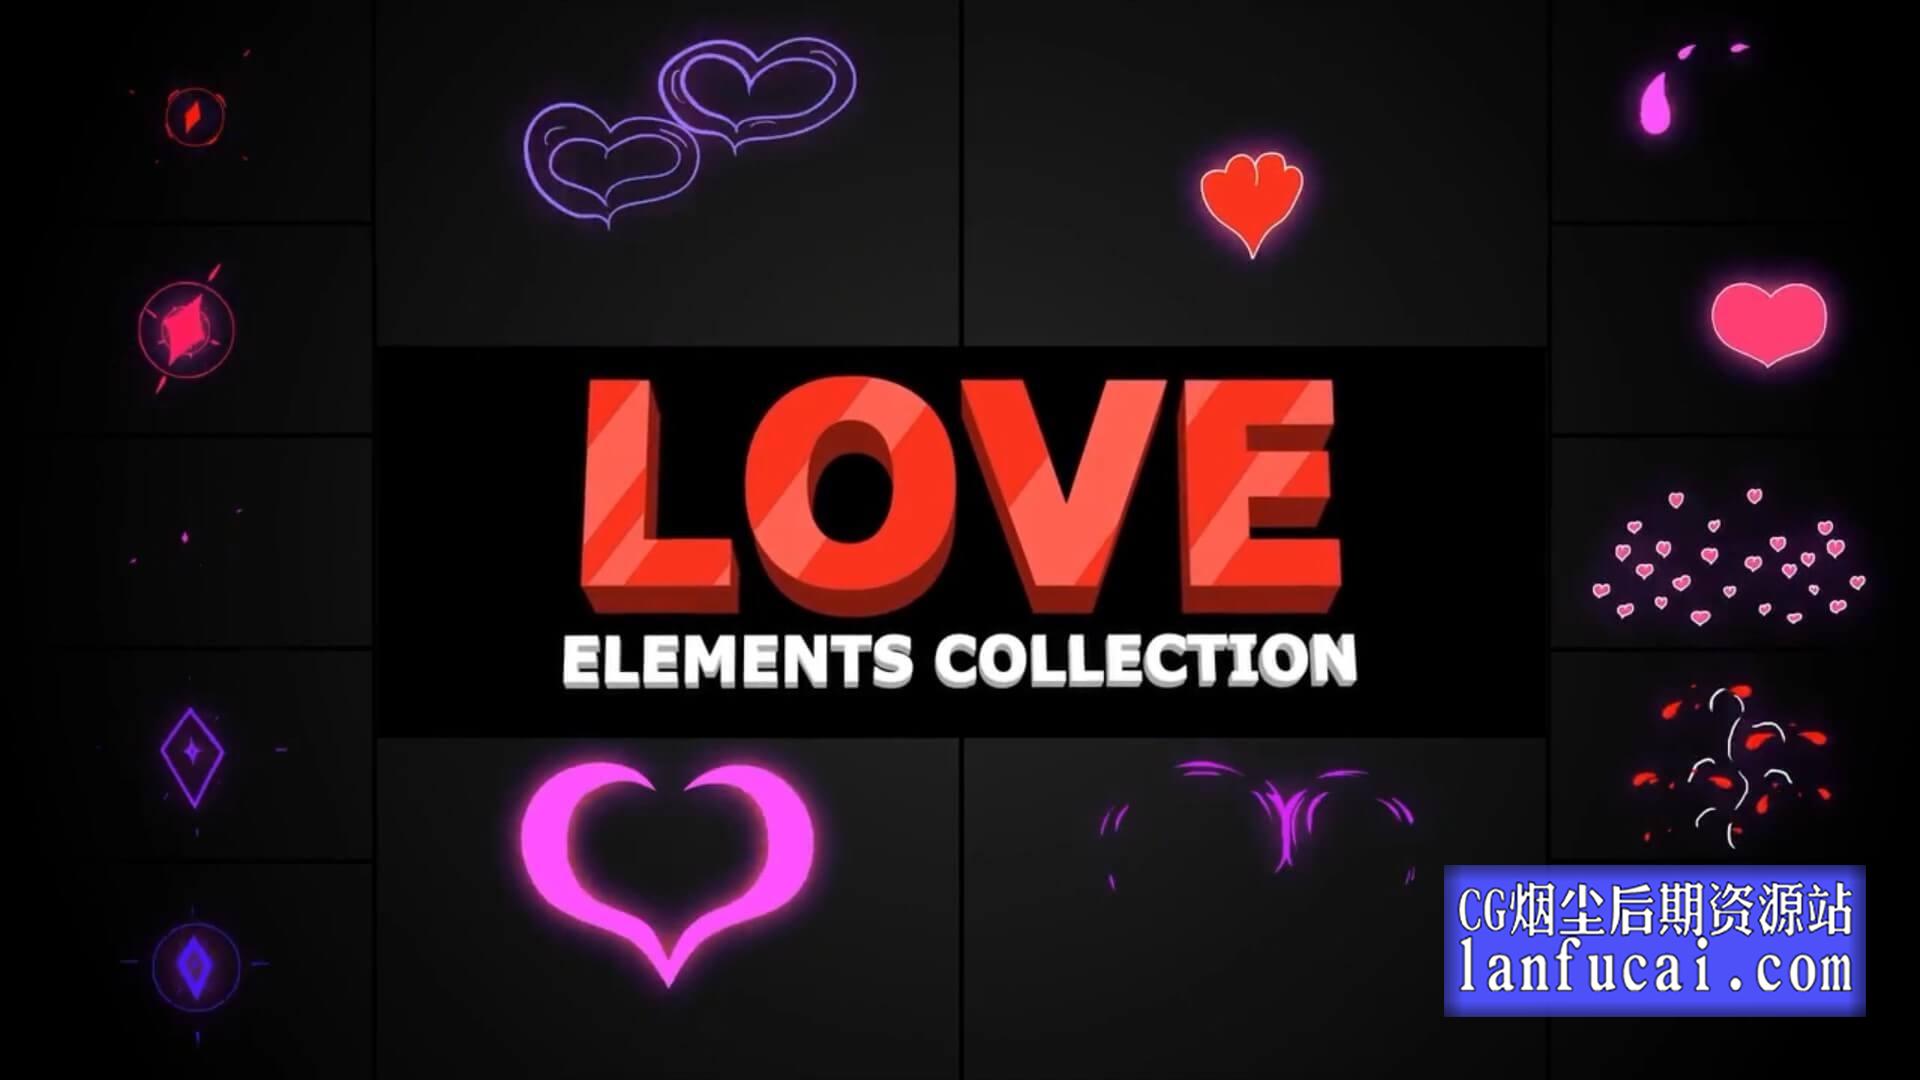 fcpx插件 14组浪漫可爱卡通爱心桃心动画素材 Romantic Elements1后期屋